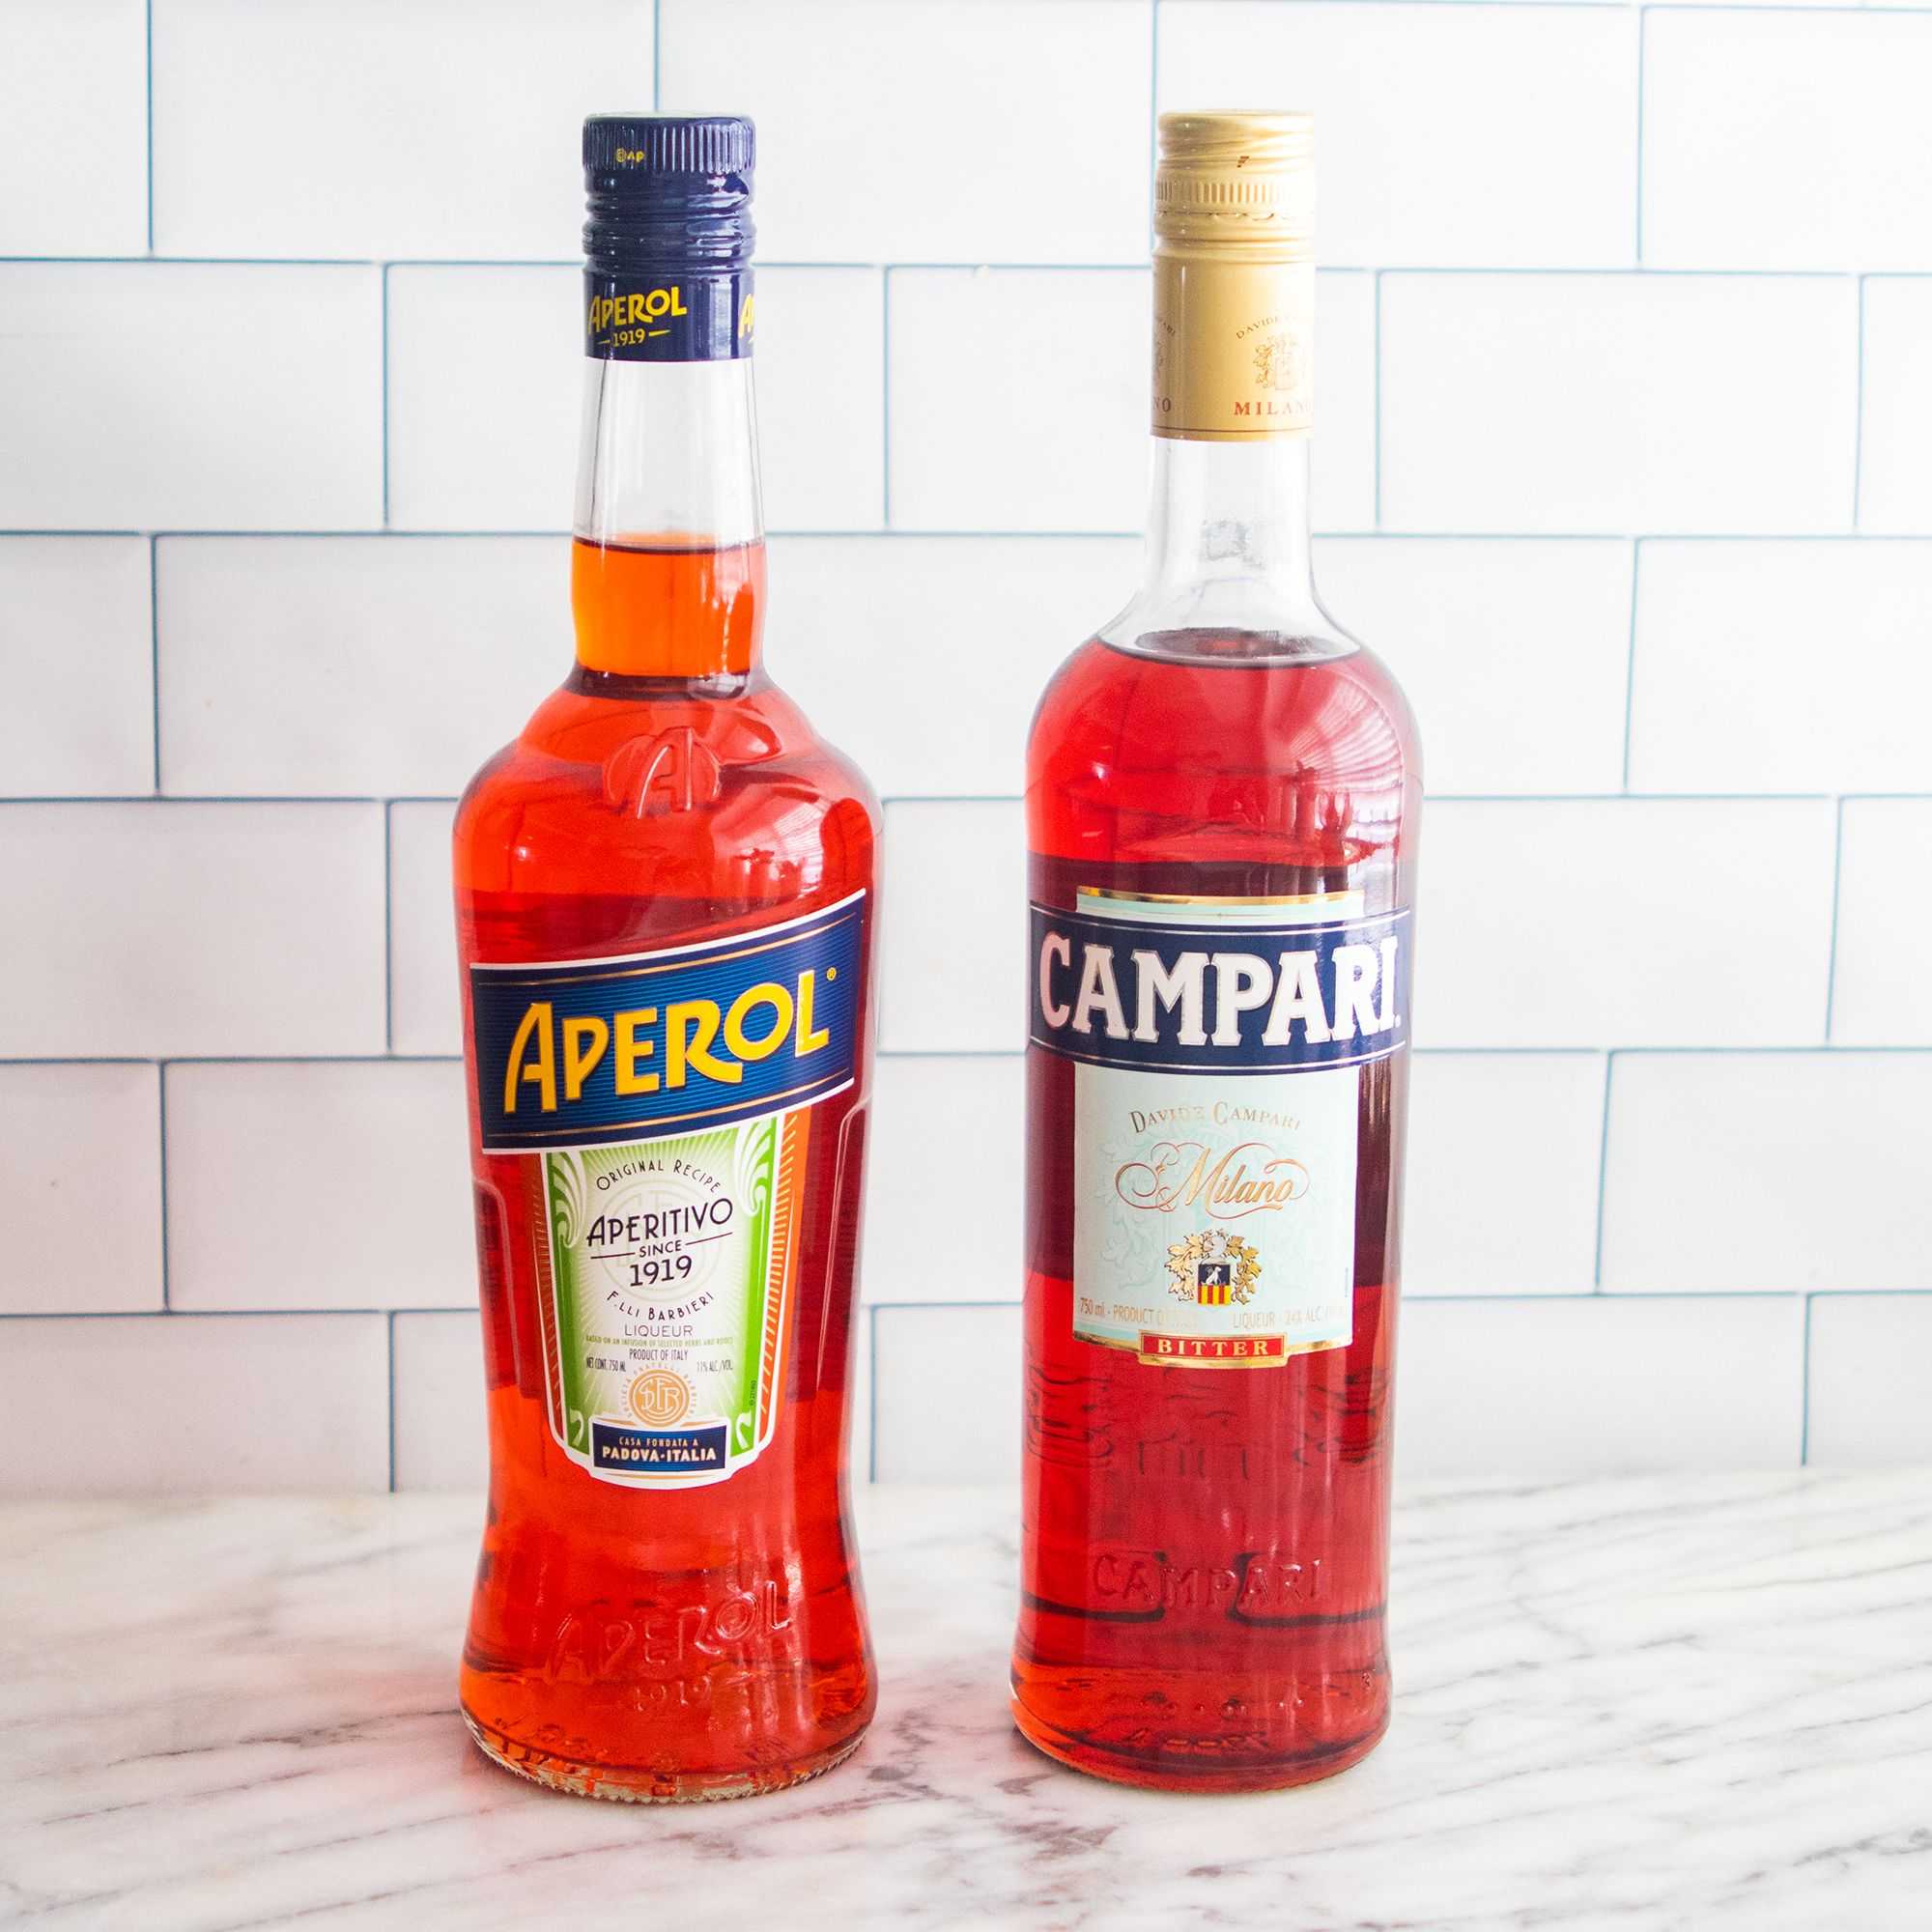 Кампари: что это за напиток, как и с чем пьют, рецепты коктейлей